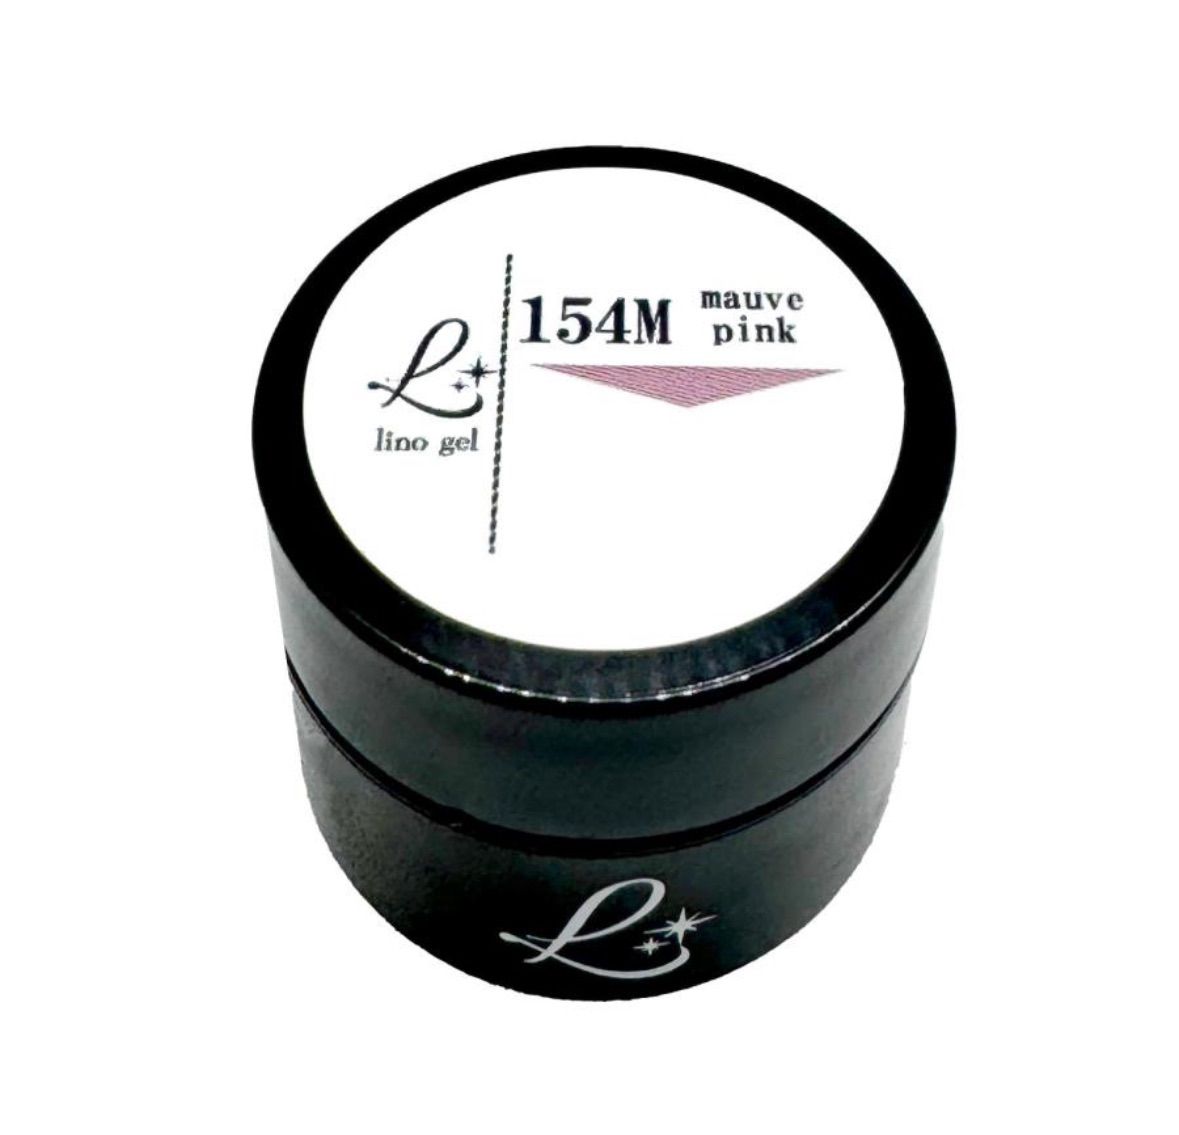 LinoGel リノジェル カラージェル 5g LED/UVライト対応 154M ムーブピンク mauve pink プロフェショナル ジェルネイル  カラー ネイル - メルカリ